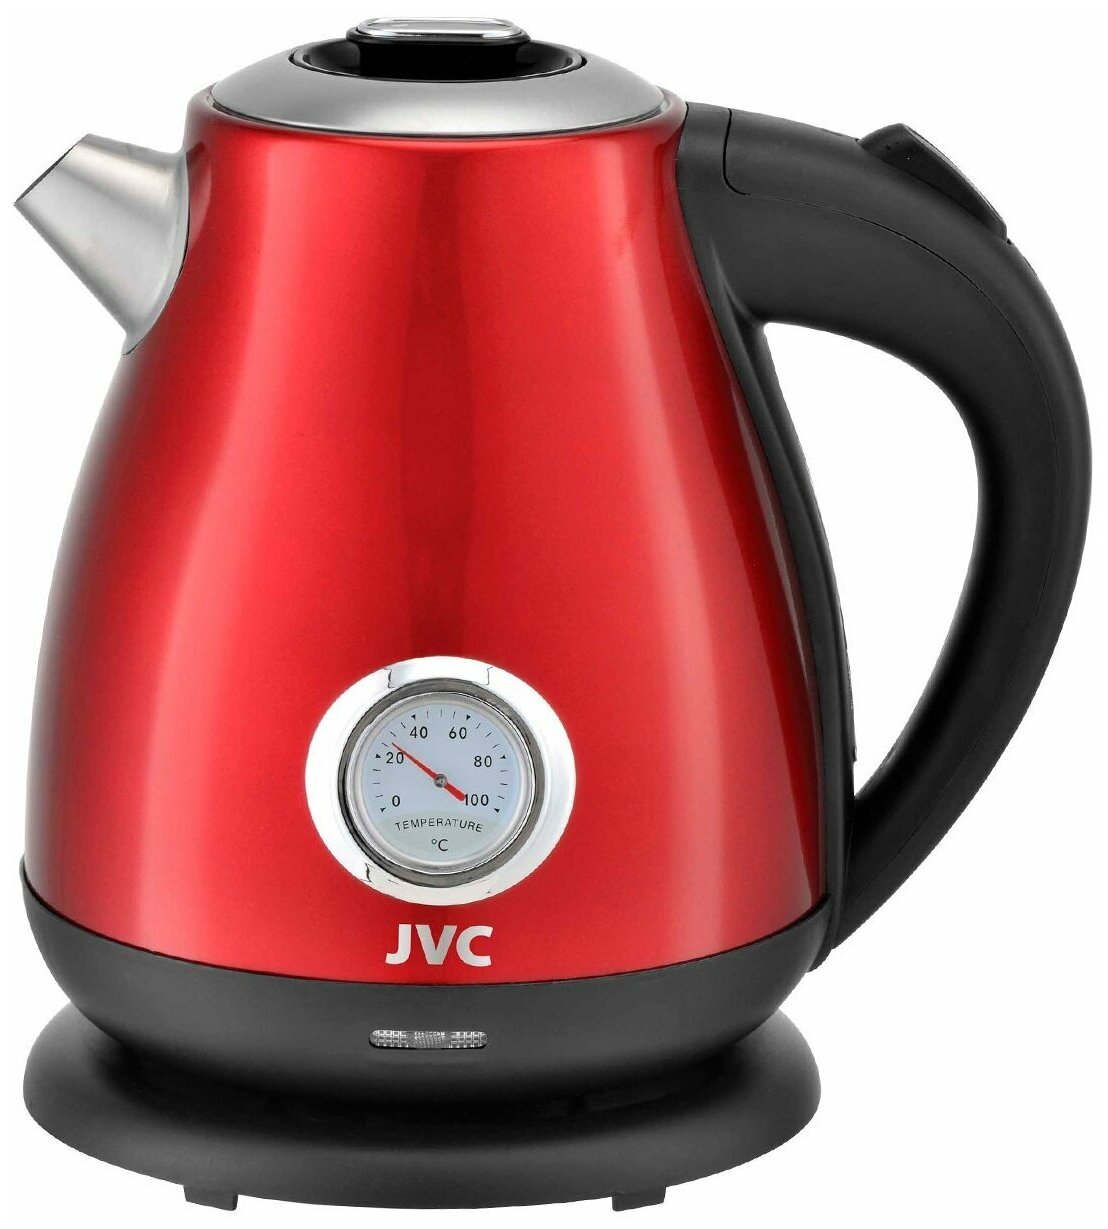 Чайник электрический JVC 1.7 л с датчиком температуры нагрева ретро-дизайн подставка с вращением на 360 градусов 2200 Вт